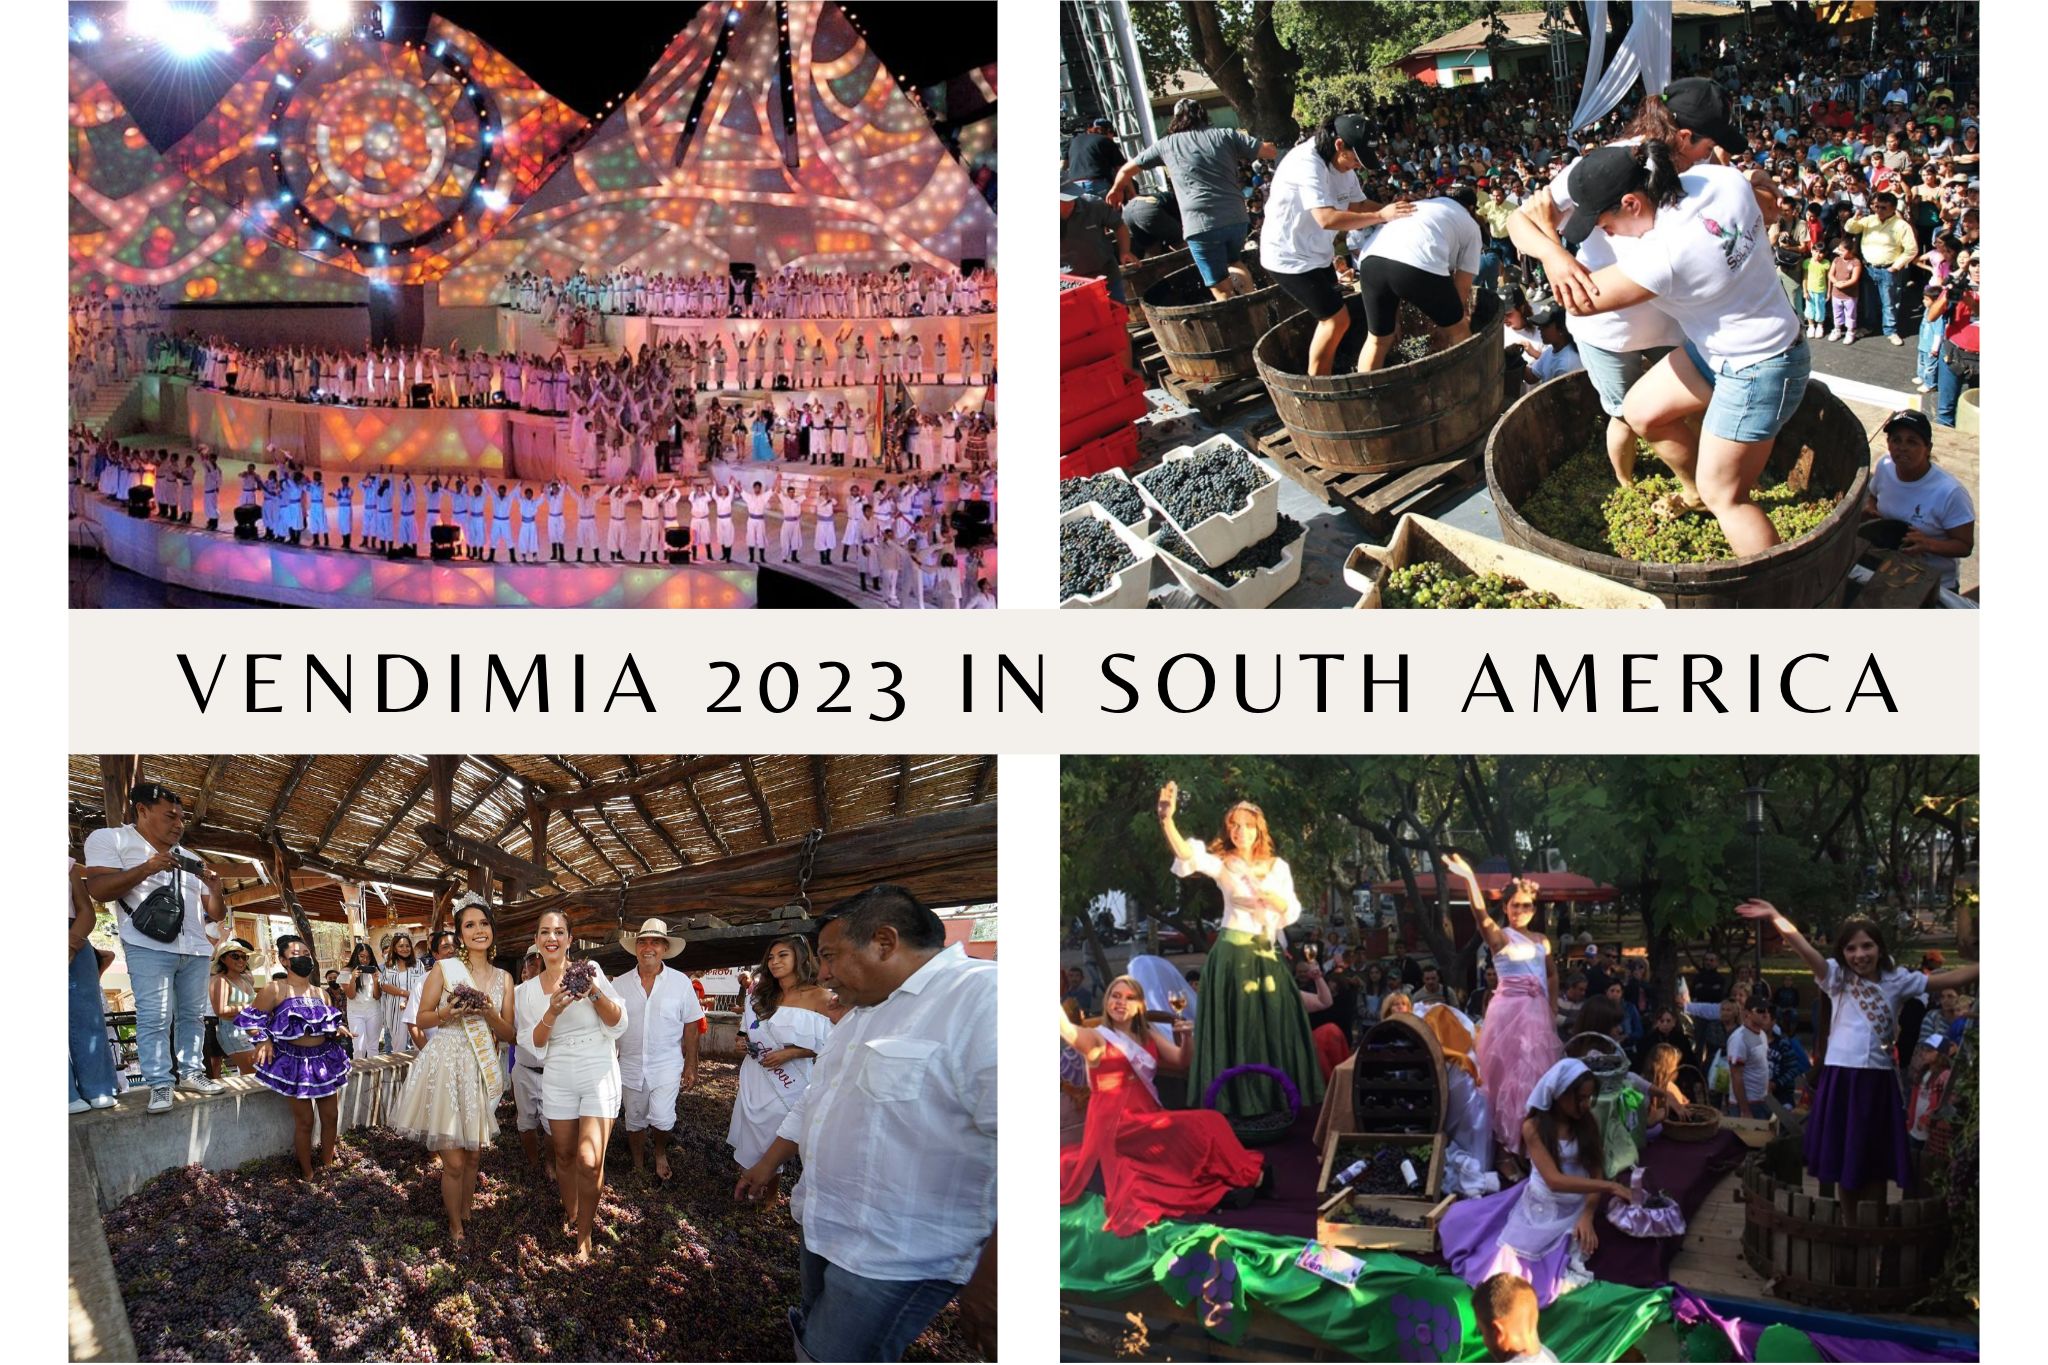 Vendimia 2023 in South America, Argentina, Chile and Uruguay